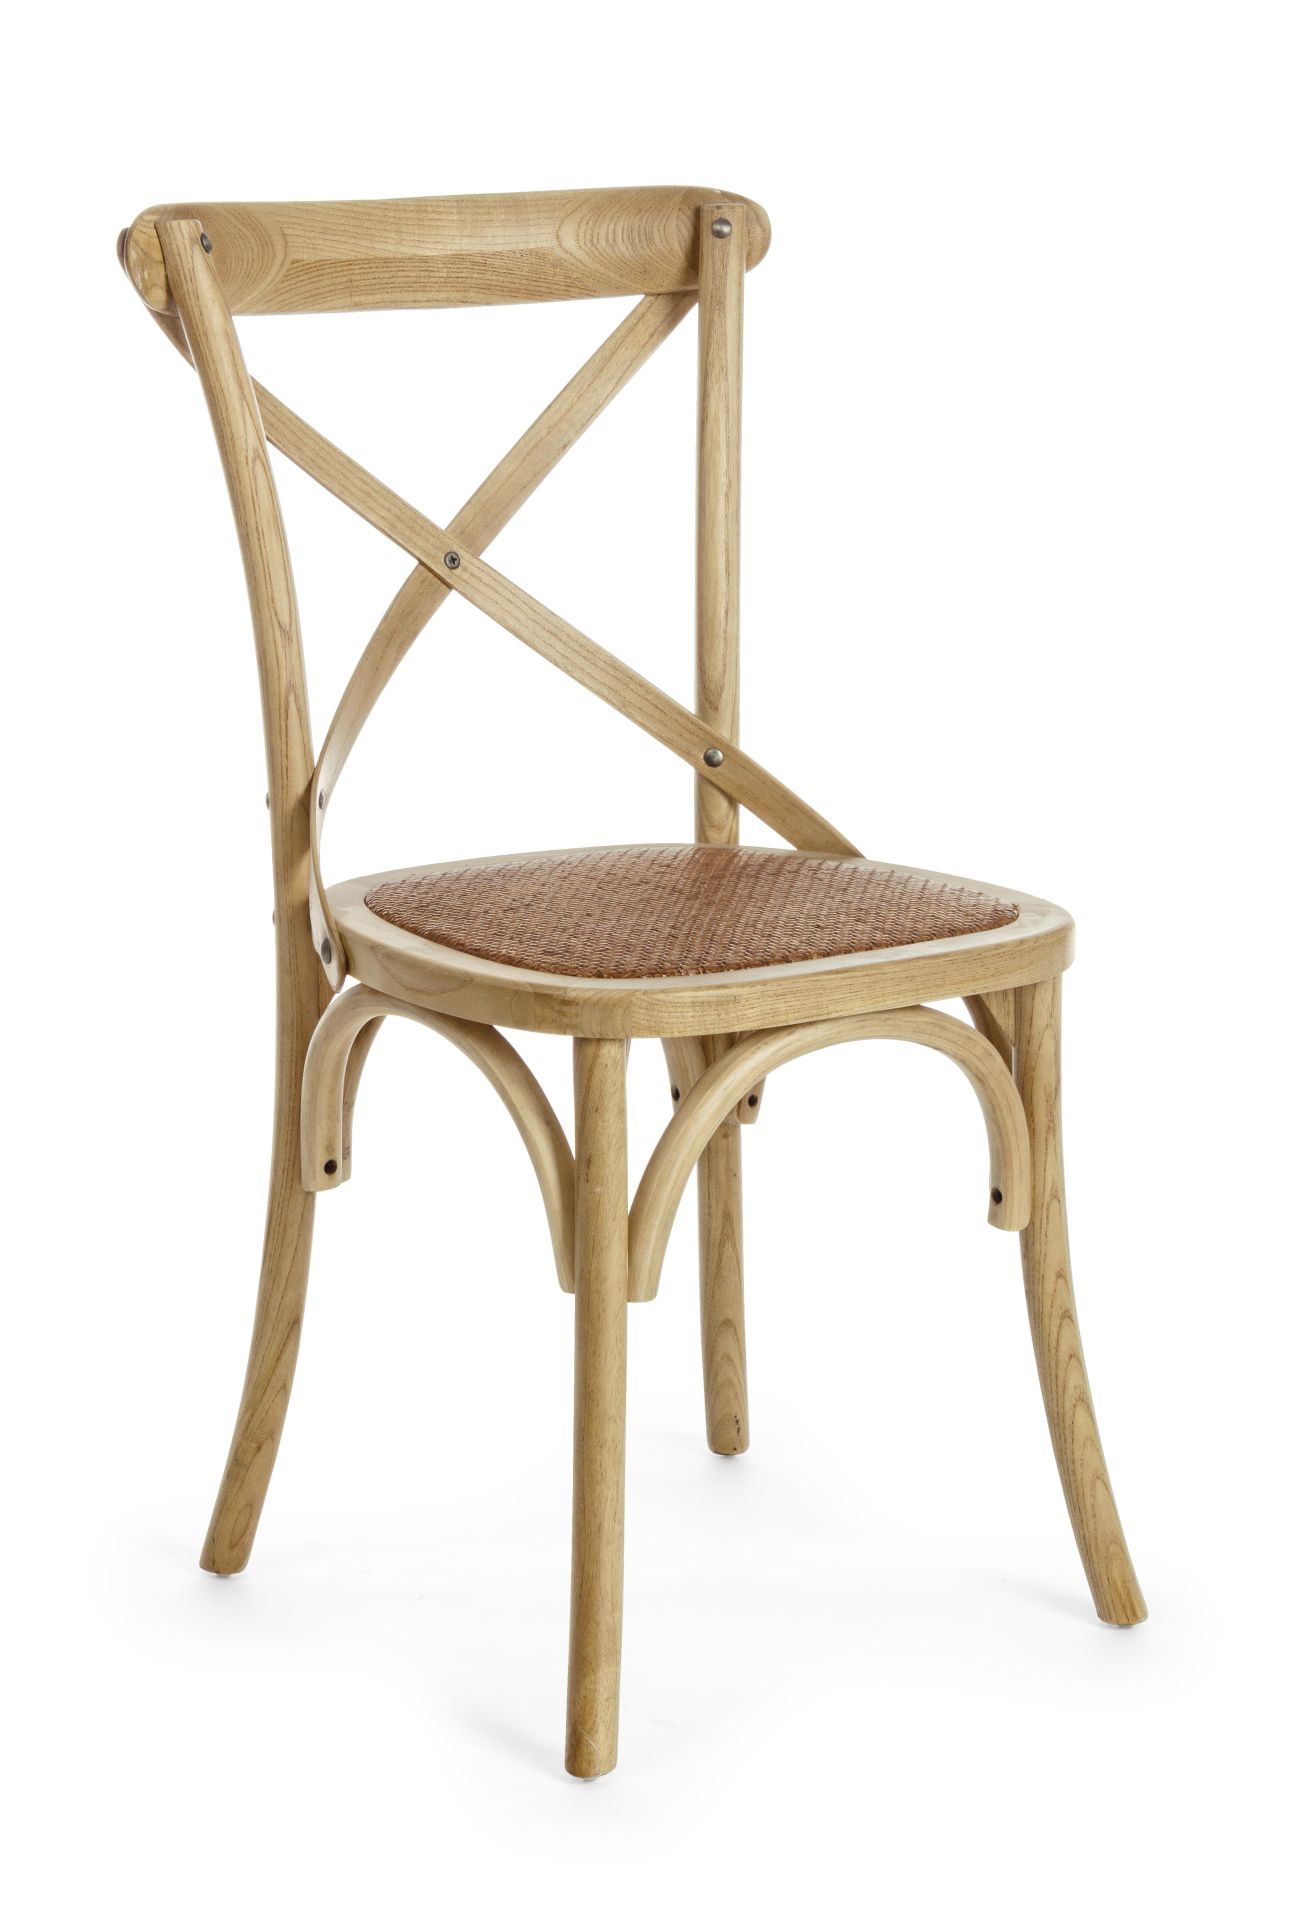 Der Stuhl Cross überzeugt mit seinem klassischen Design. Gefertigt wurde der Stuhl aus Ulmenholz, welches einen braunen Farbton besitzt. Die Sitz- und Rückenfläche ist aus Rattan gefertigt. Die Sitzhöhe beträgt 46 cm.